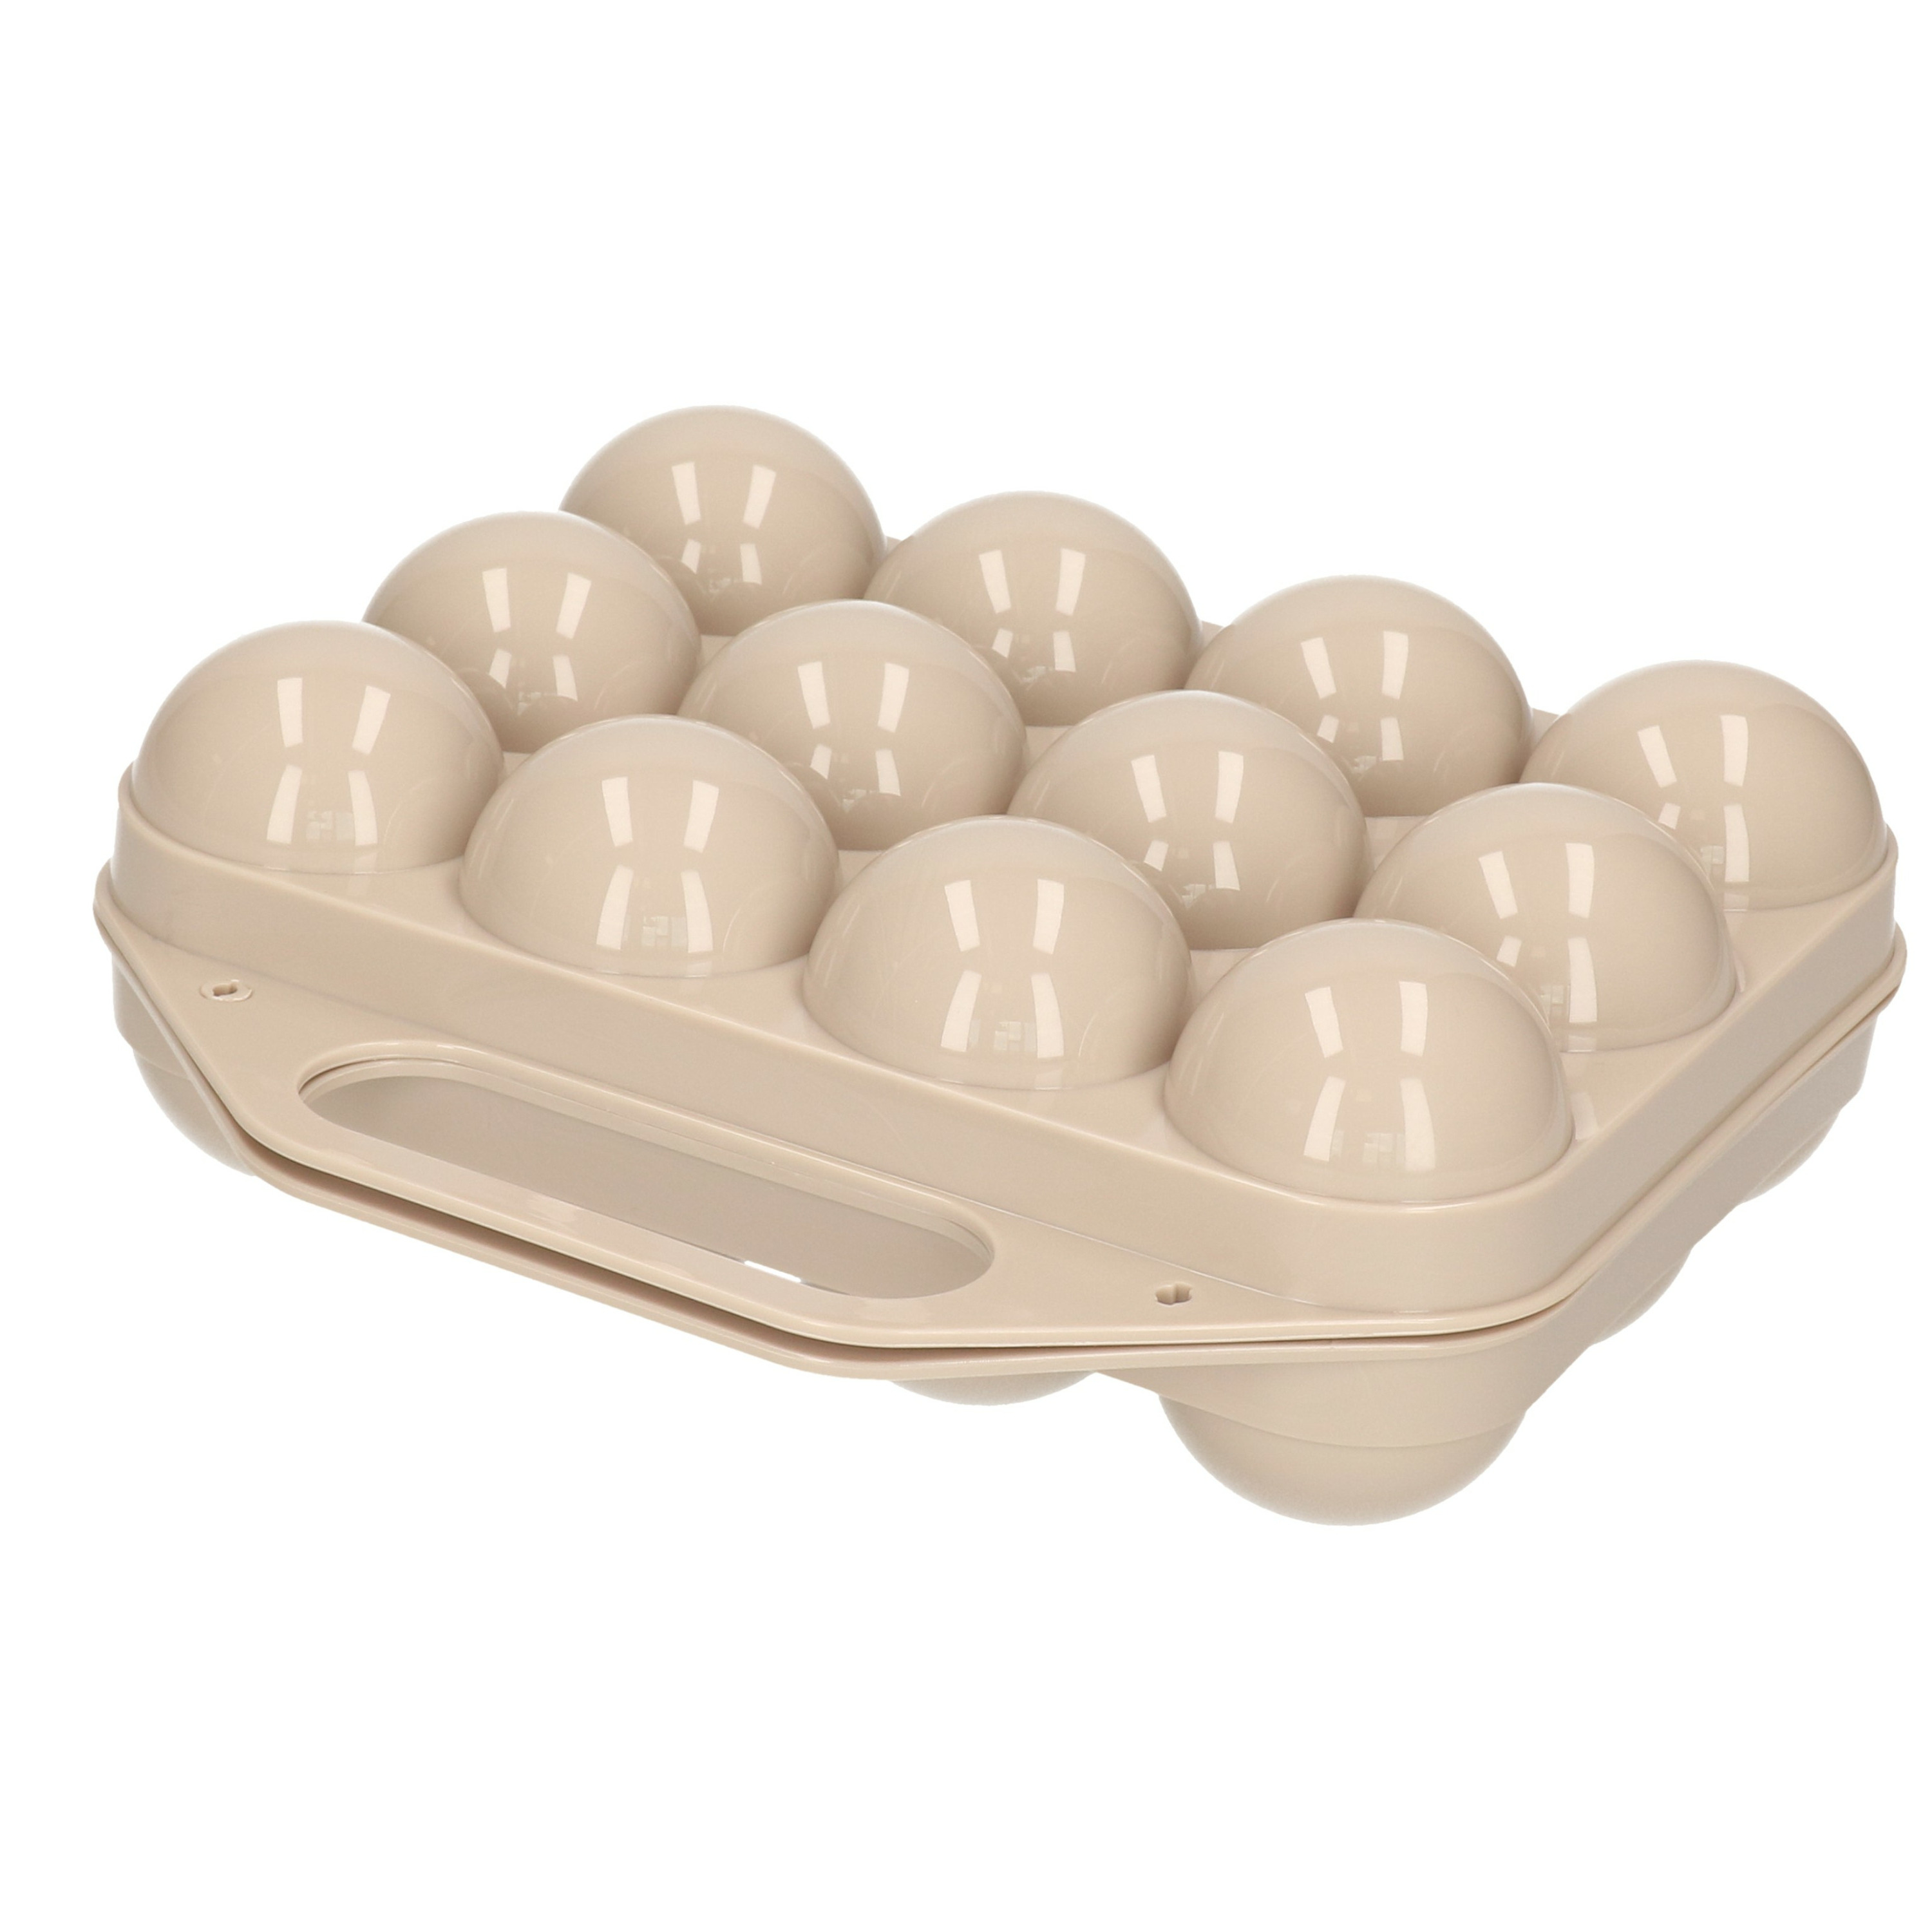 Eierdoos koelkast organizer eierhouder 12 eieren taupe kunststof 20 x 19 cm